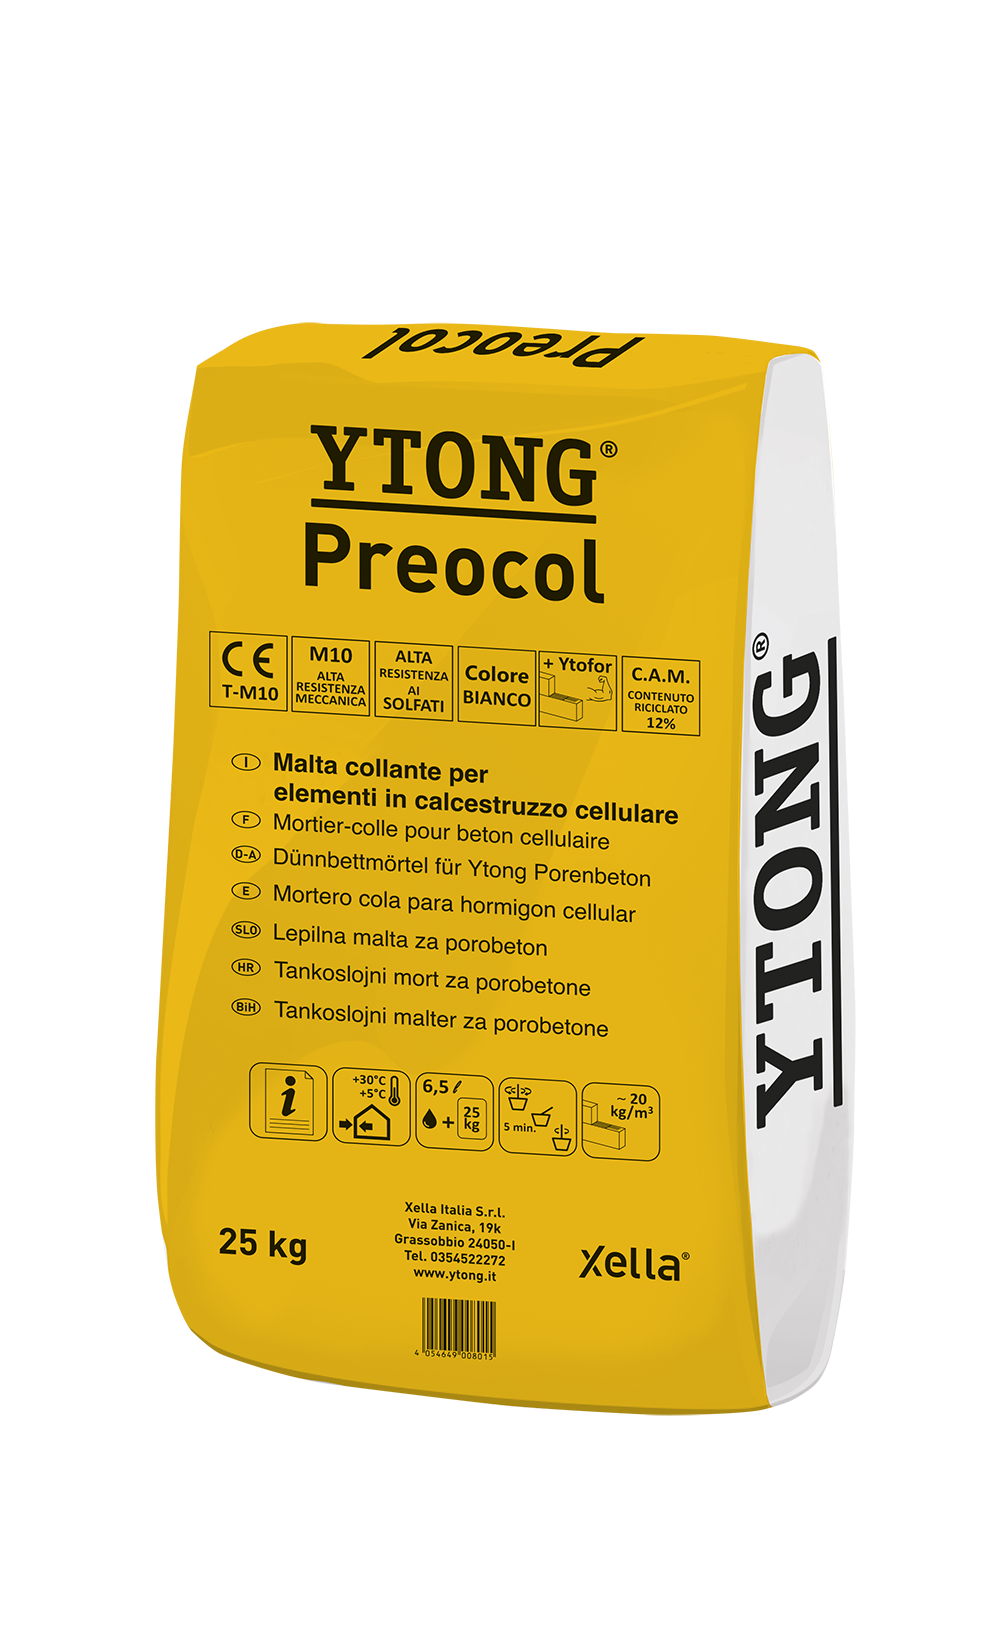 Preocol Ytong bonding mortar